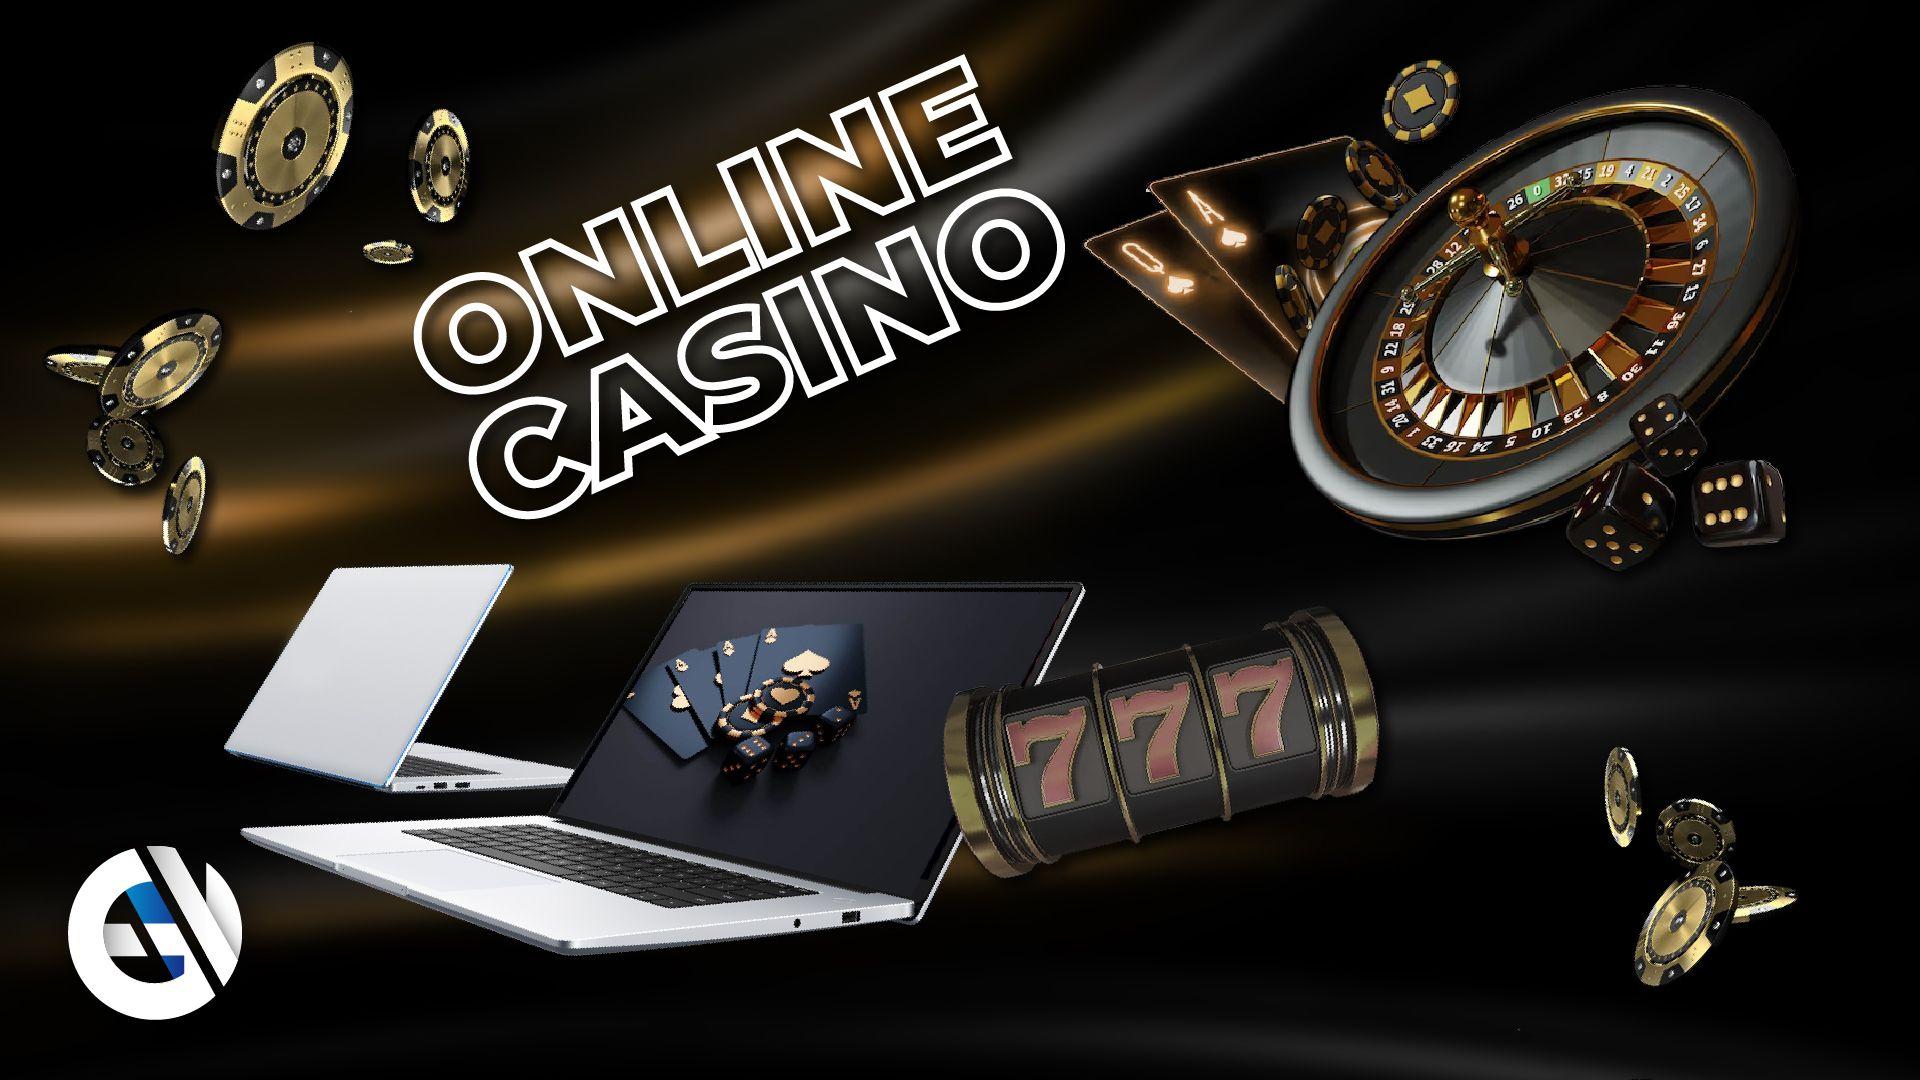 Ihre Sicherheit in der Welt der Online-Casinos gewährleisten: Ein praktischer Leitfaden für verantwortungsbewusste Spieler